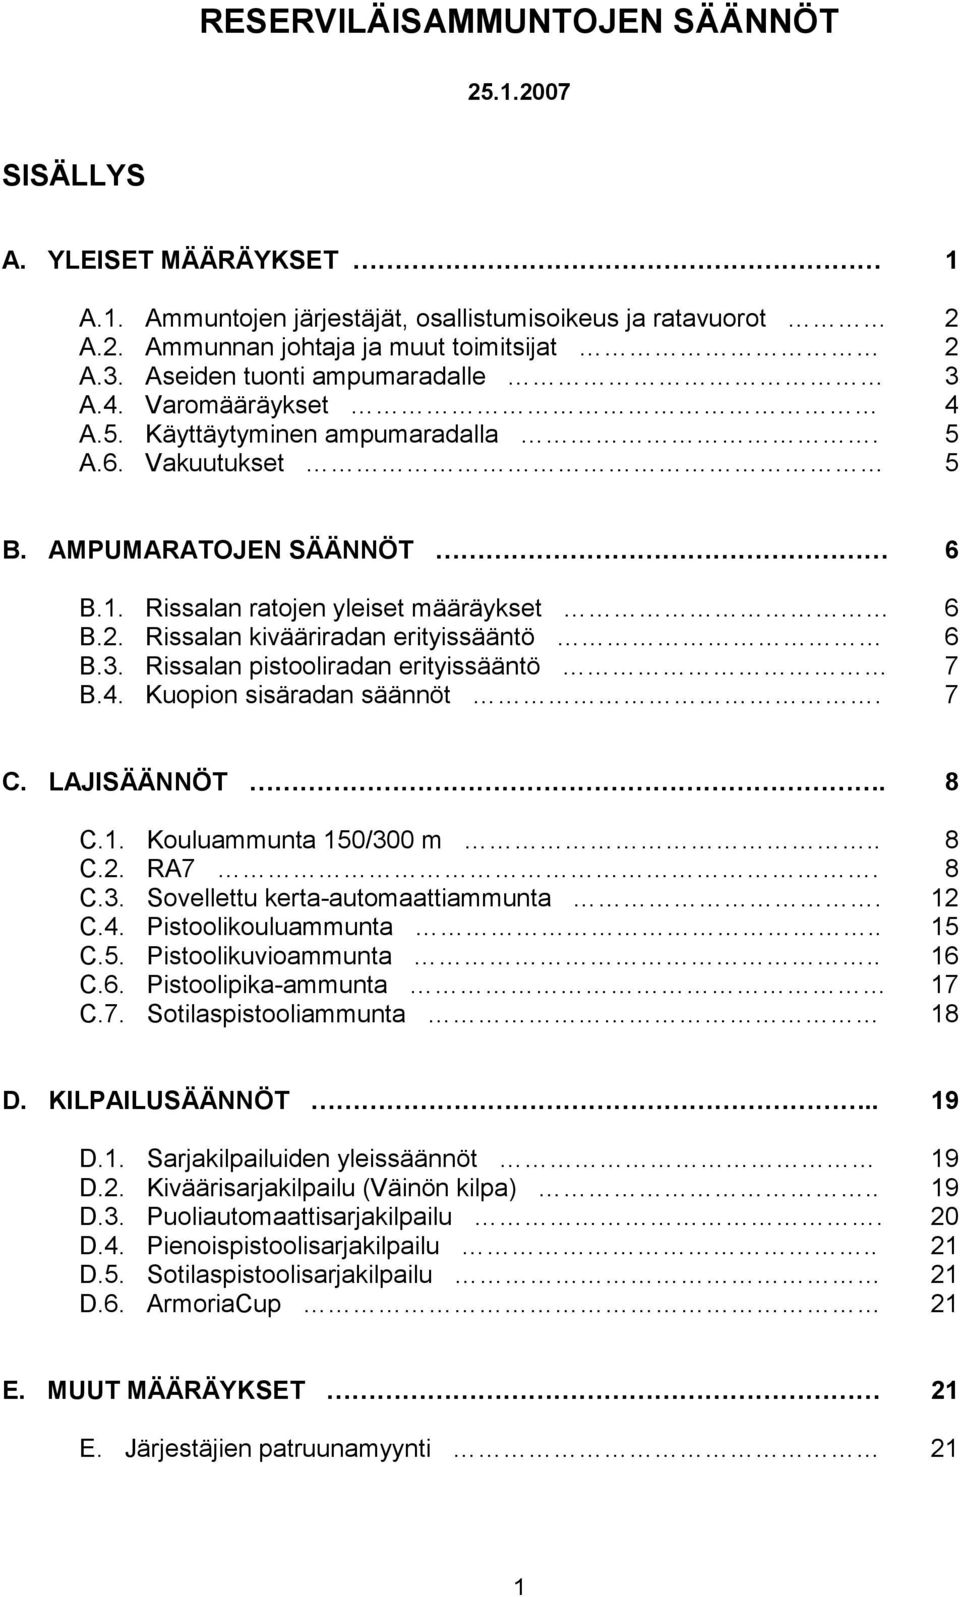 Rissalan kivääriradan erityissääntö 6 B.3. Rissalan pistooliradan erityissääntö 7 B.4. Kuopion sisäradan säännöt. 7 C. LAJISÄÄNNÖT. 8 C.1. Kouluammunta 150/300 m.. 8 C.2. RA7. 8 C.3. Sovellettu kerta-automaattiammunta.